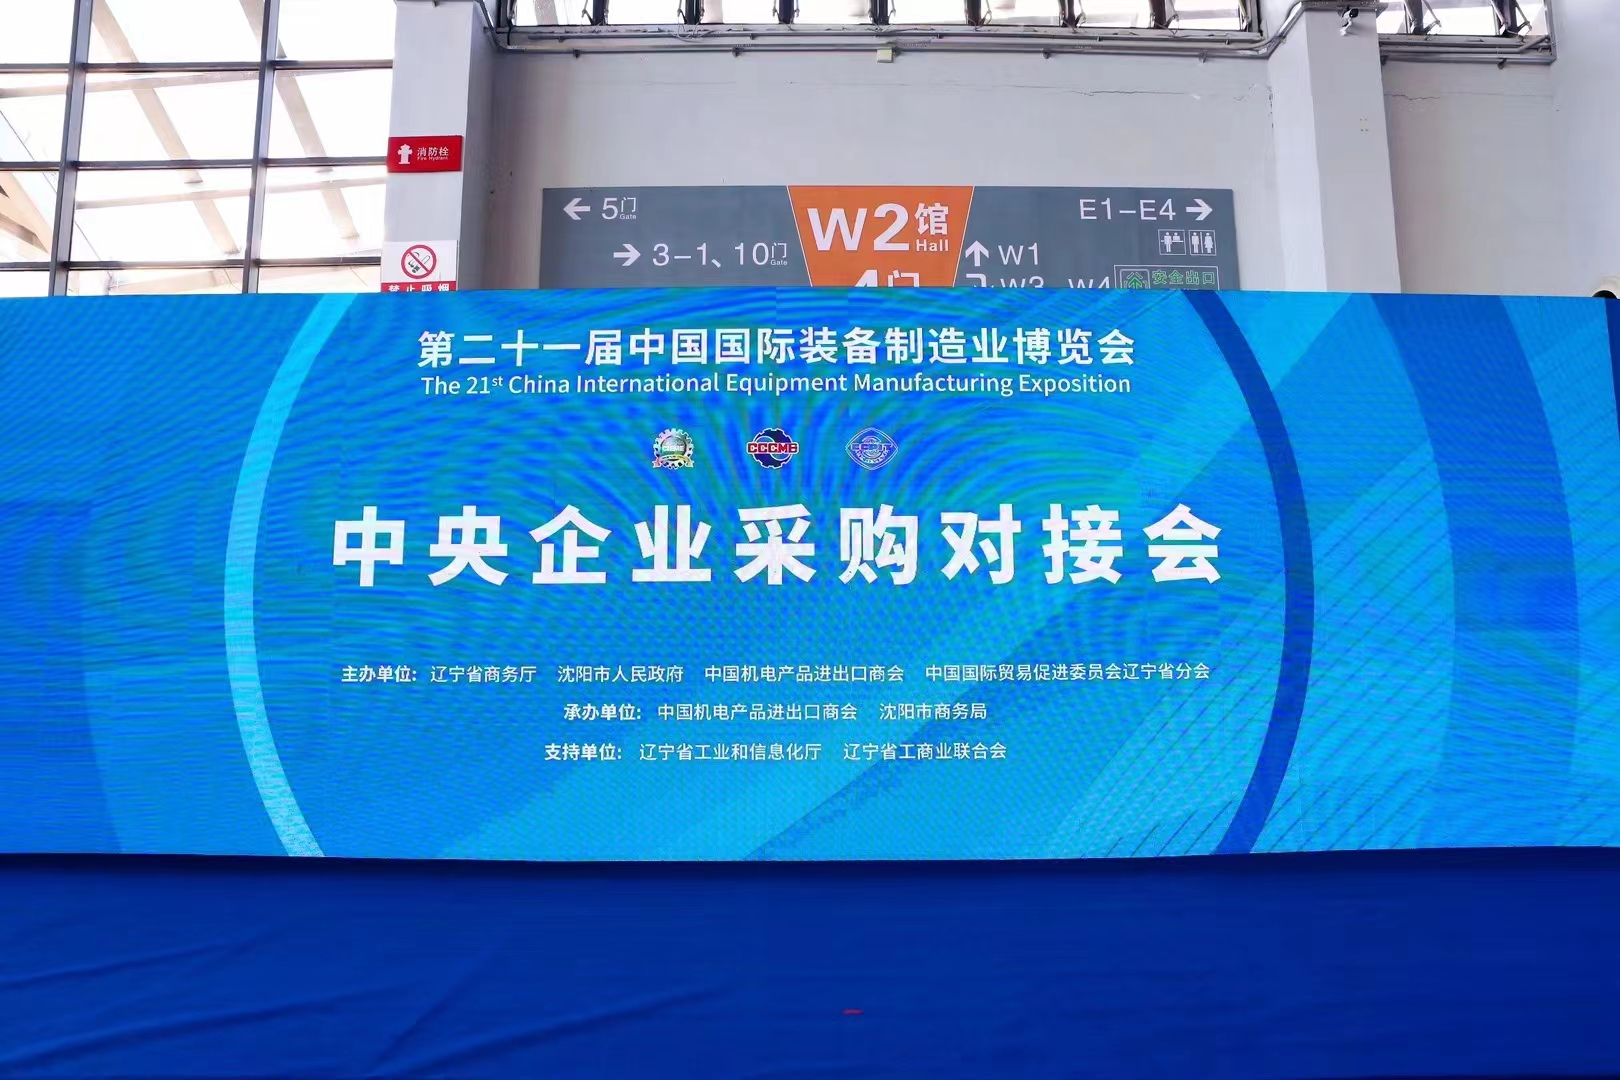 المعرض الصيني الدولي الحادي والعشرون لتصنيع المعدات